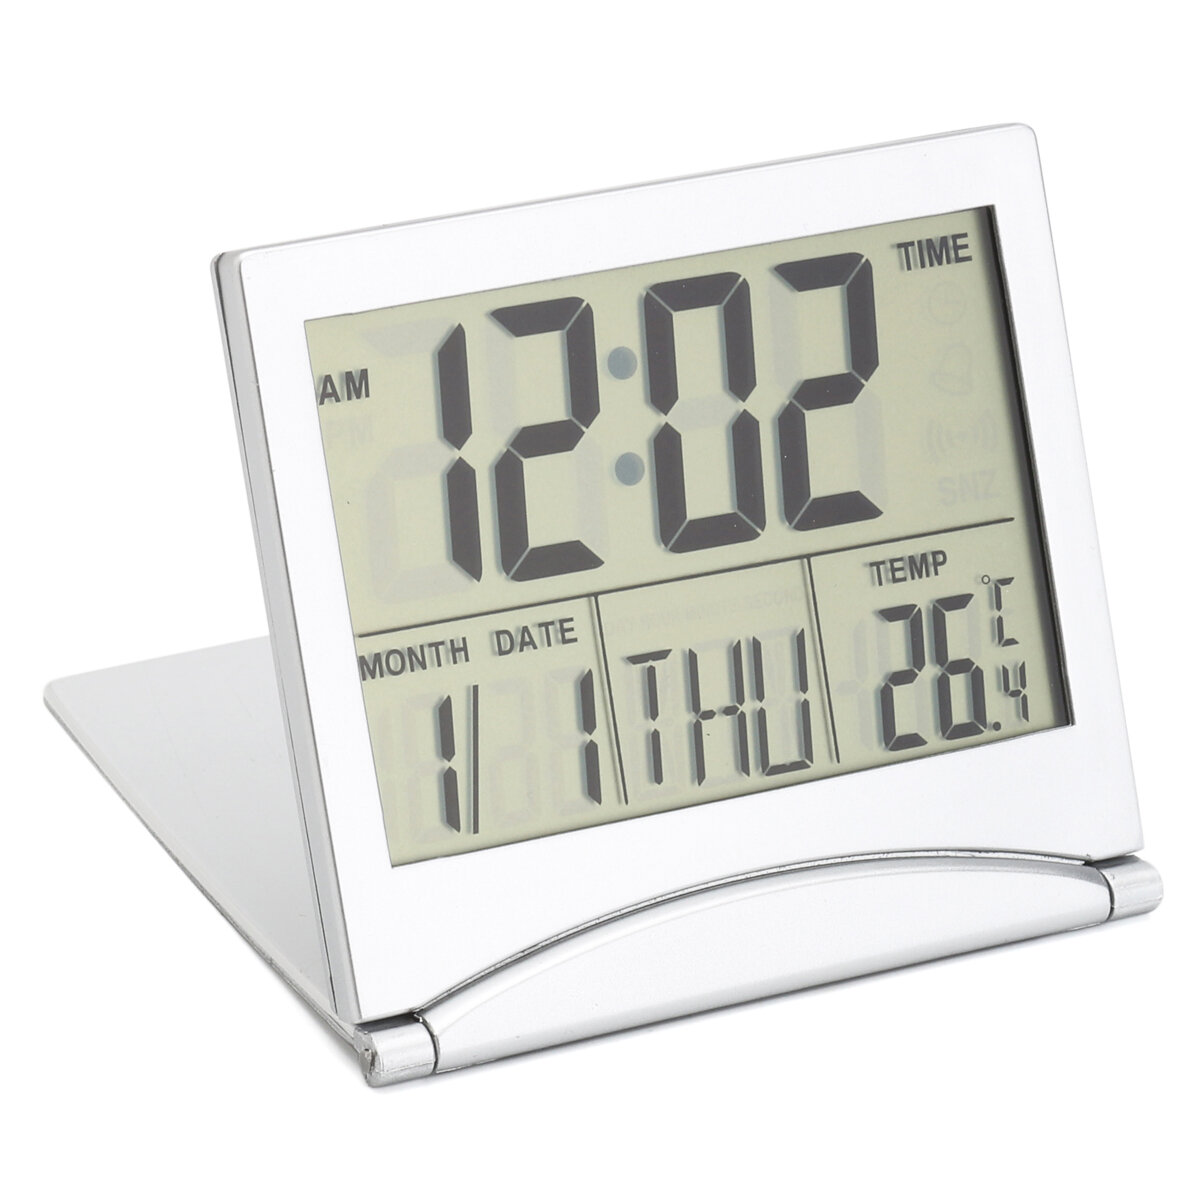 Digital-LCD Display Thermometer-Kalender-Wecker flexiblen Abdeckung Schreibtisch Uhr